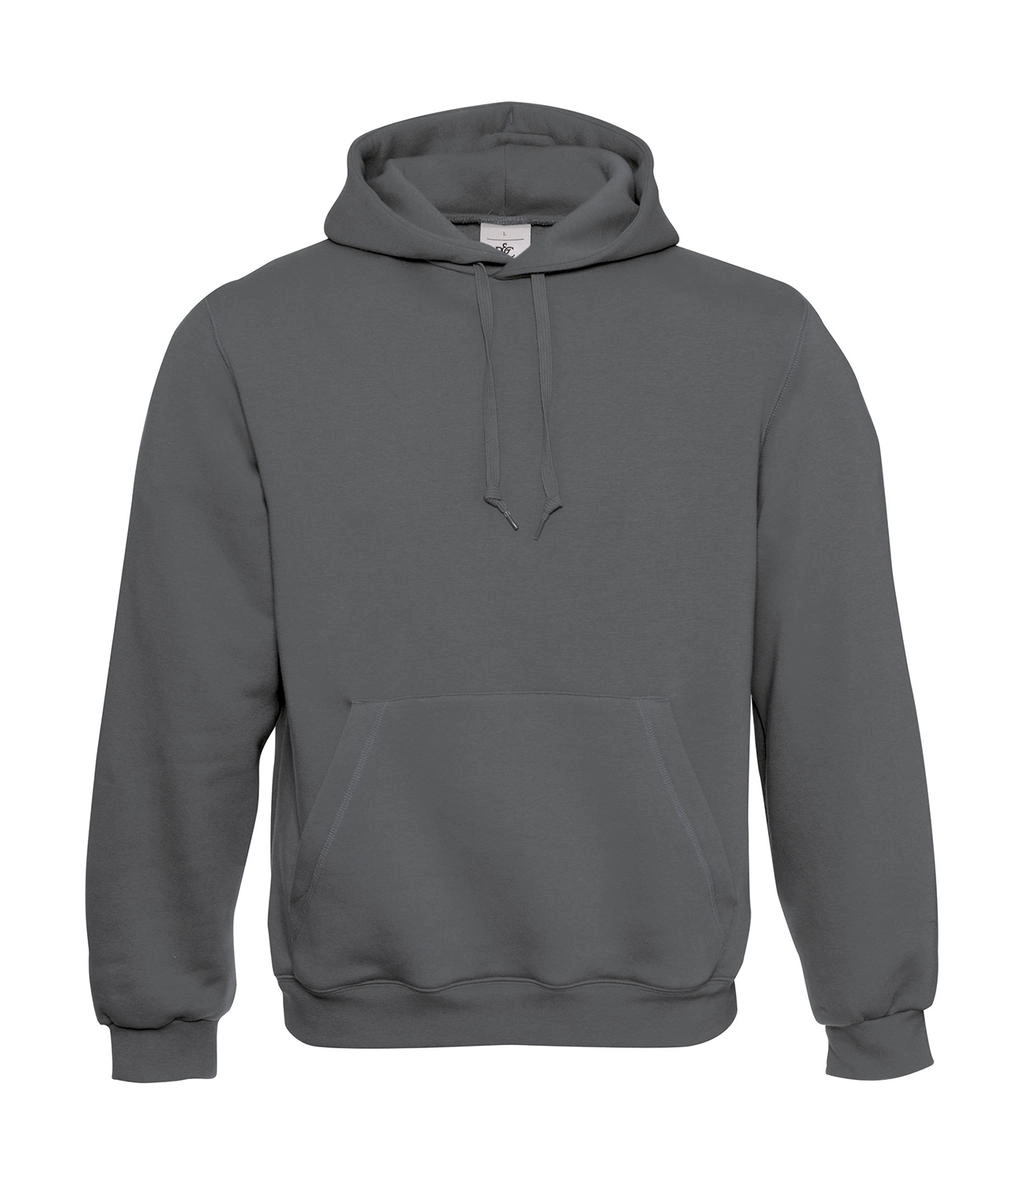 Hooded Sweatshirt zum Besticken und Bedrucken in der Farbe Steel Grey mit Ihren Logo, Schriftzug oder Motiv.